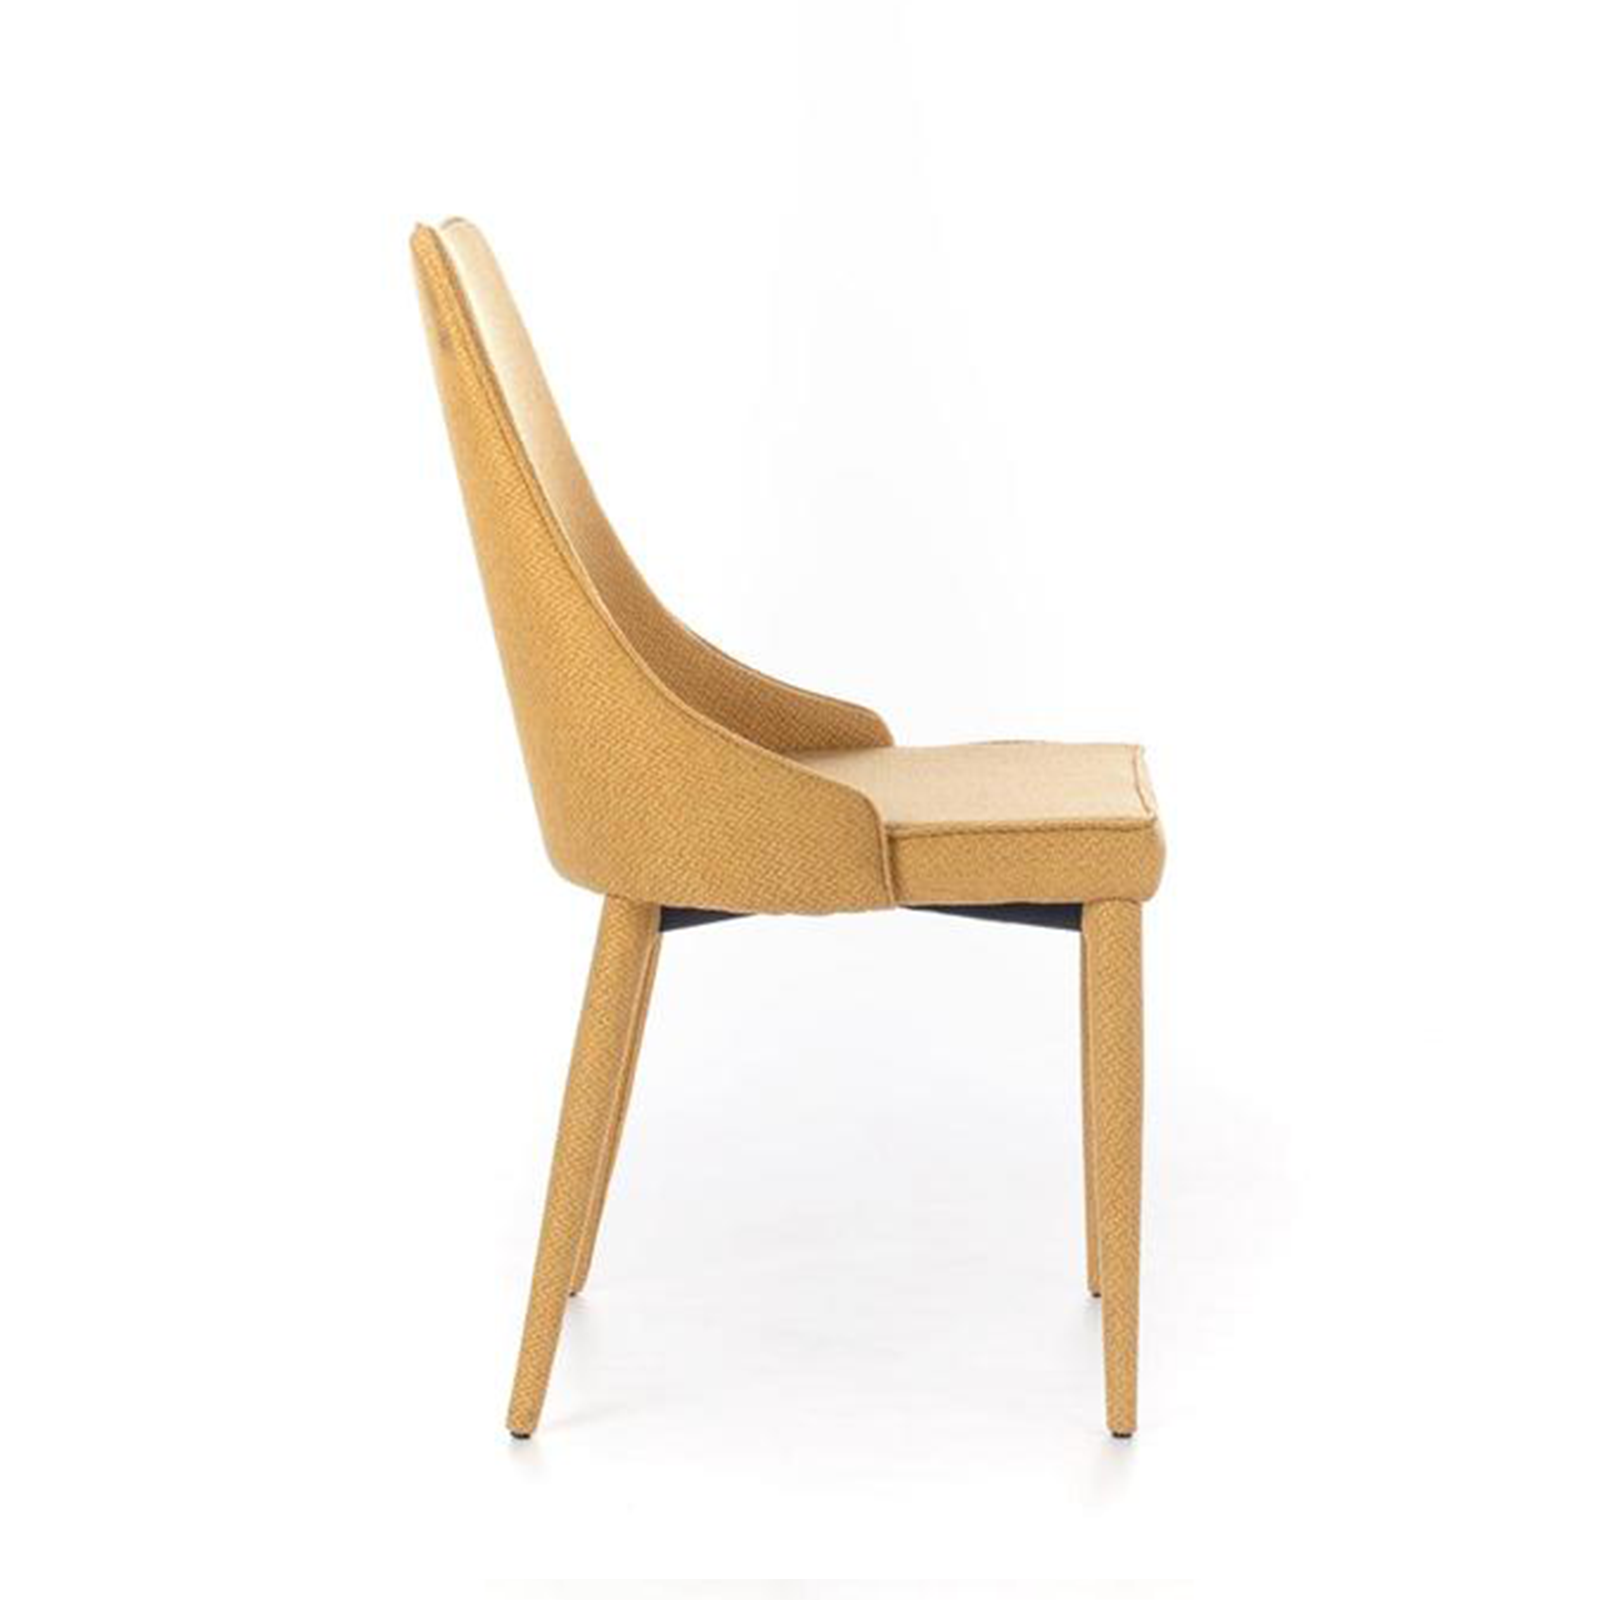 Chaise rembourrée "Myriam" fauteuil moderne en tissu 46x46 91h cm